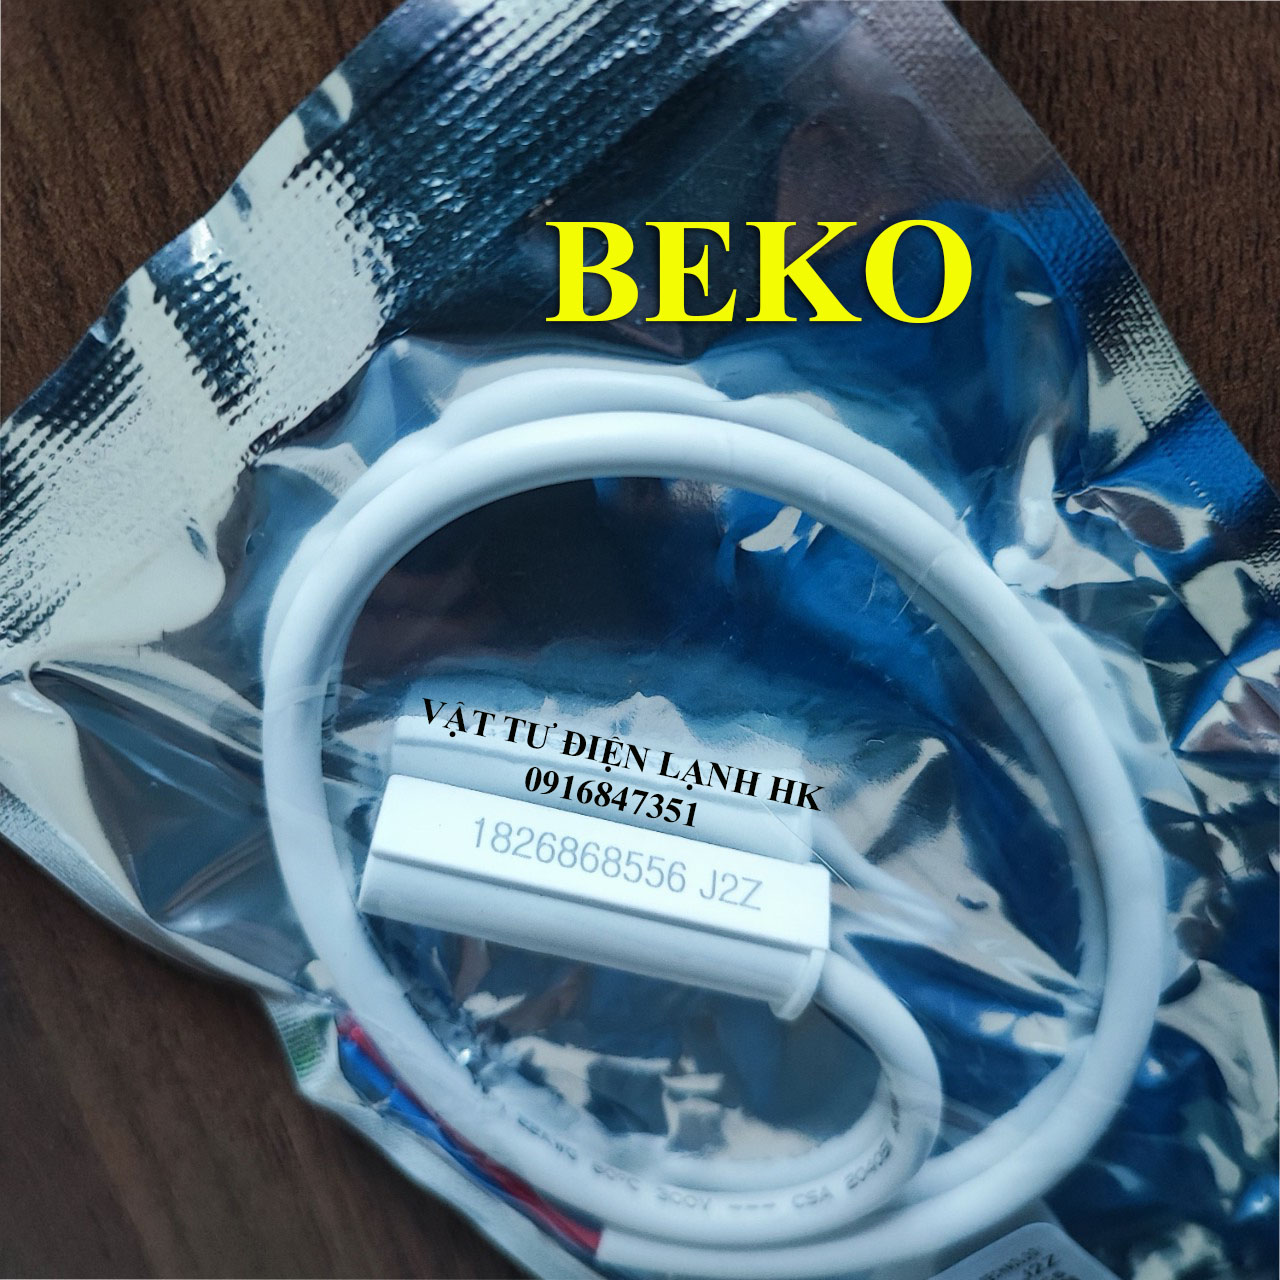 Sensor tủ lạnh BEKO 1826868556 J2Z - Đầu dò cảm biến nhiệt độ tl be ko